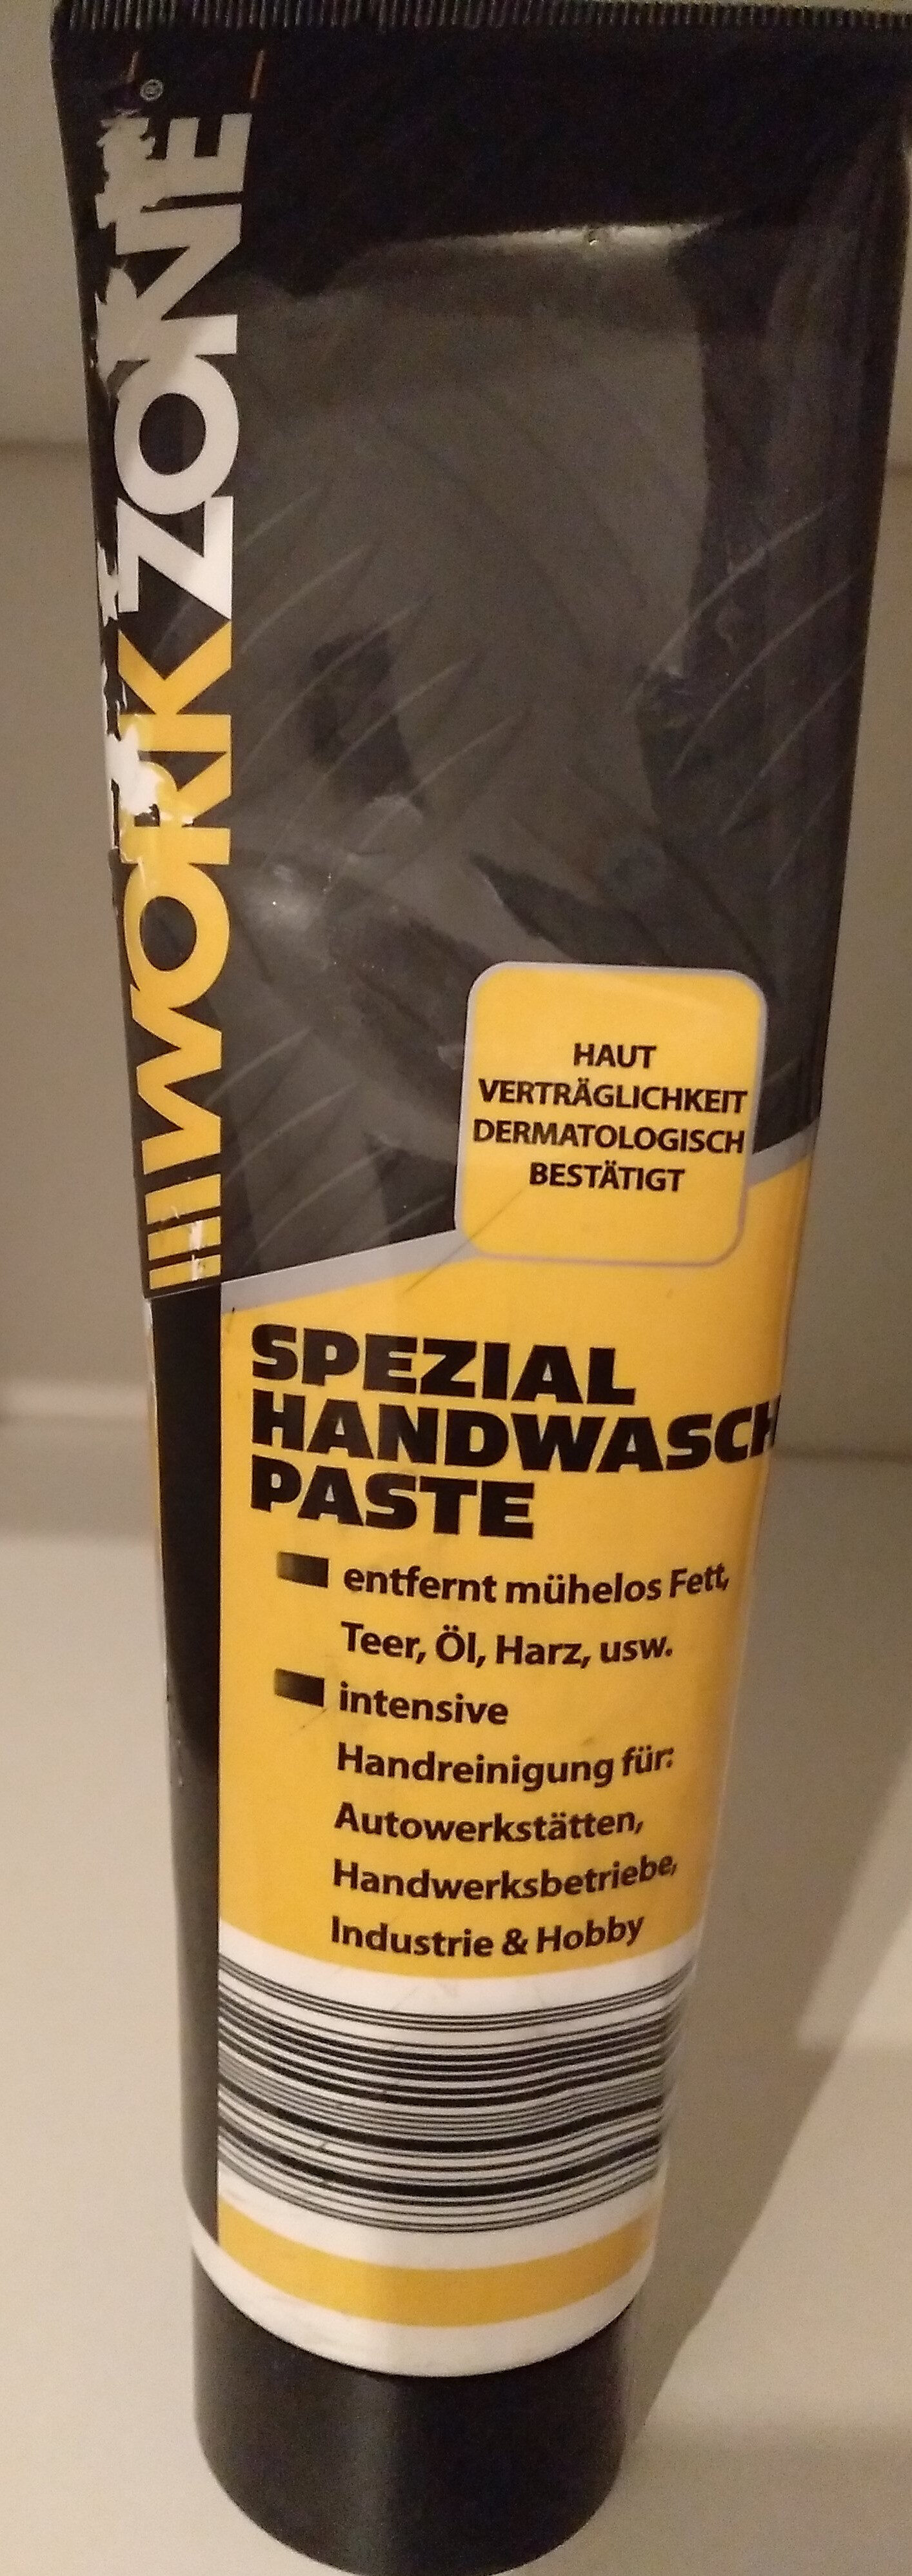 Spezial Handwaschpaste - Produkt - de